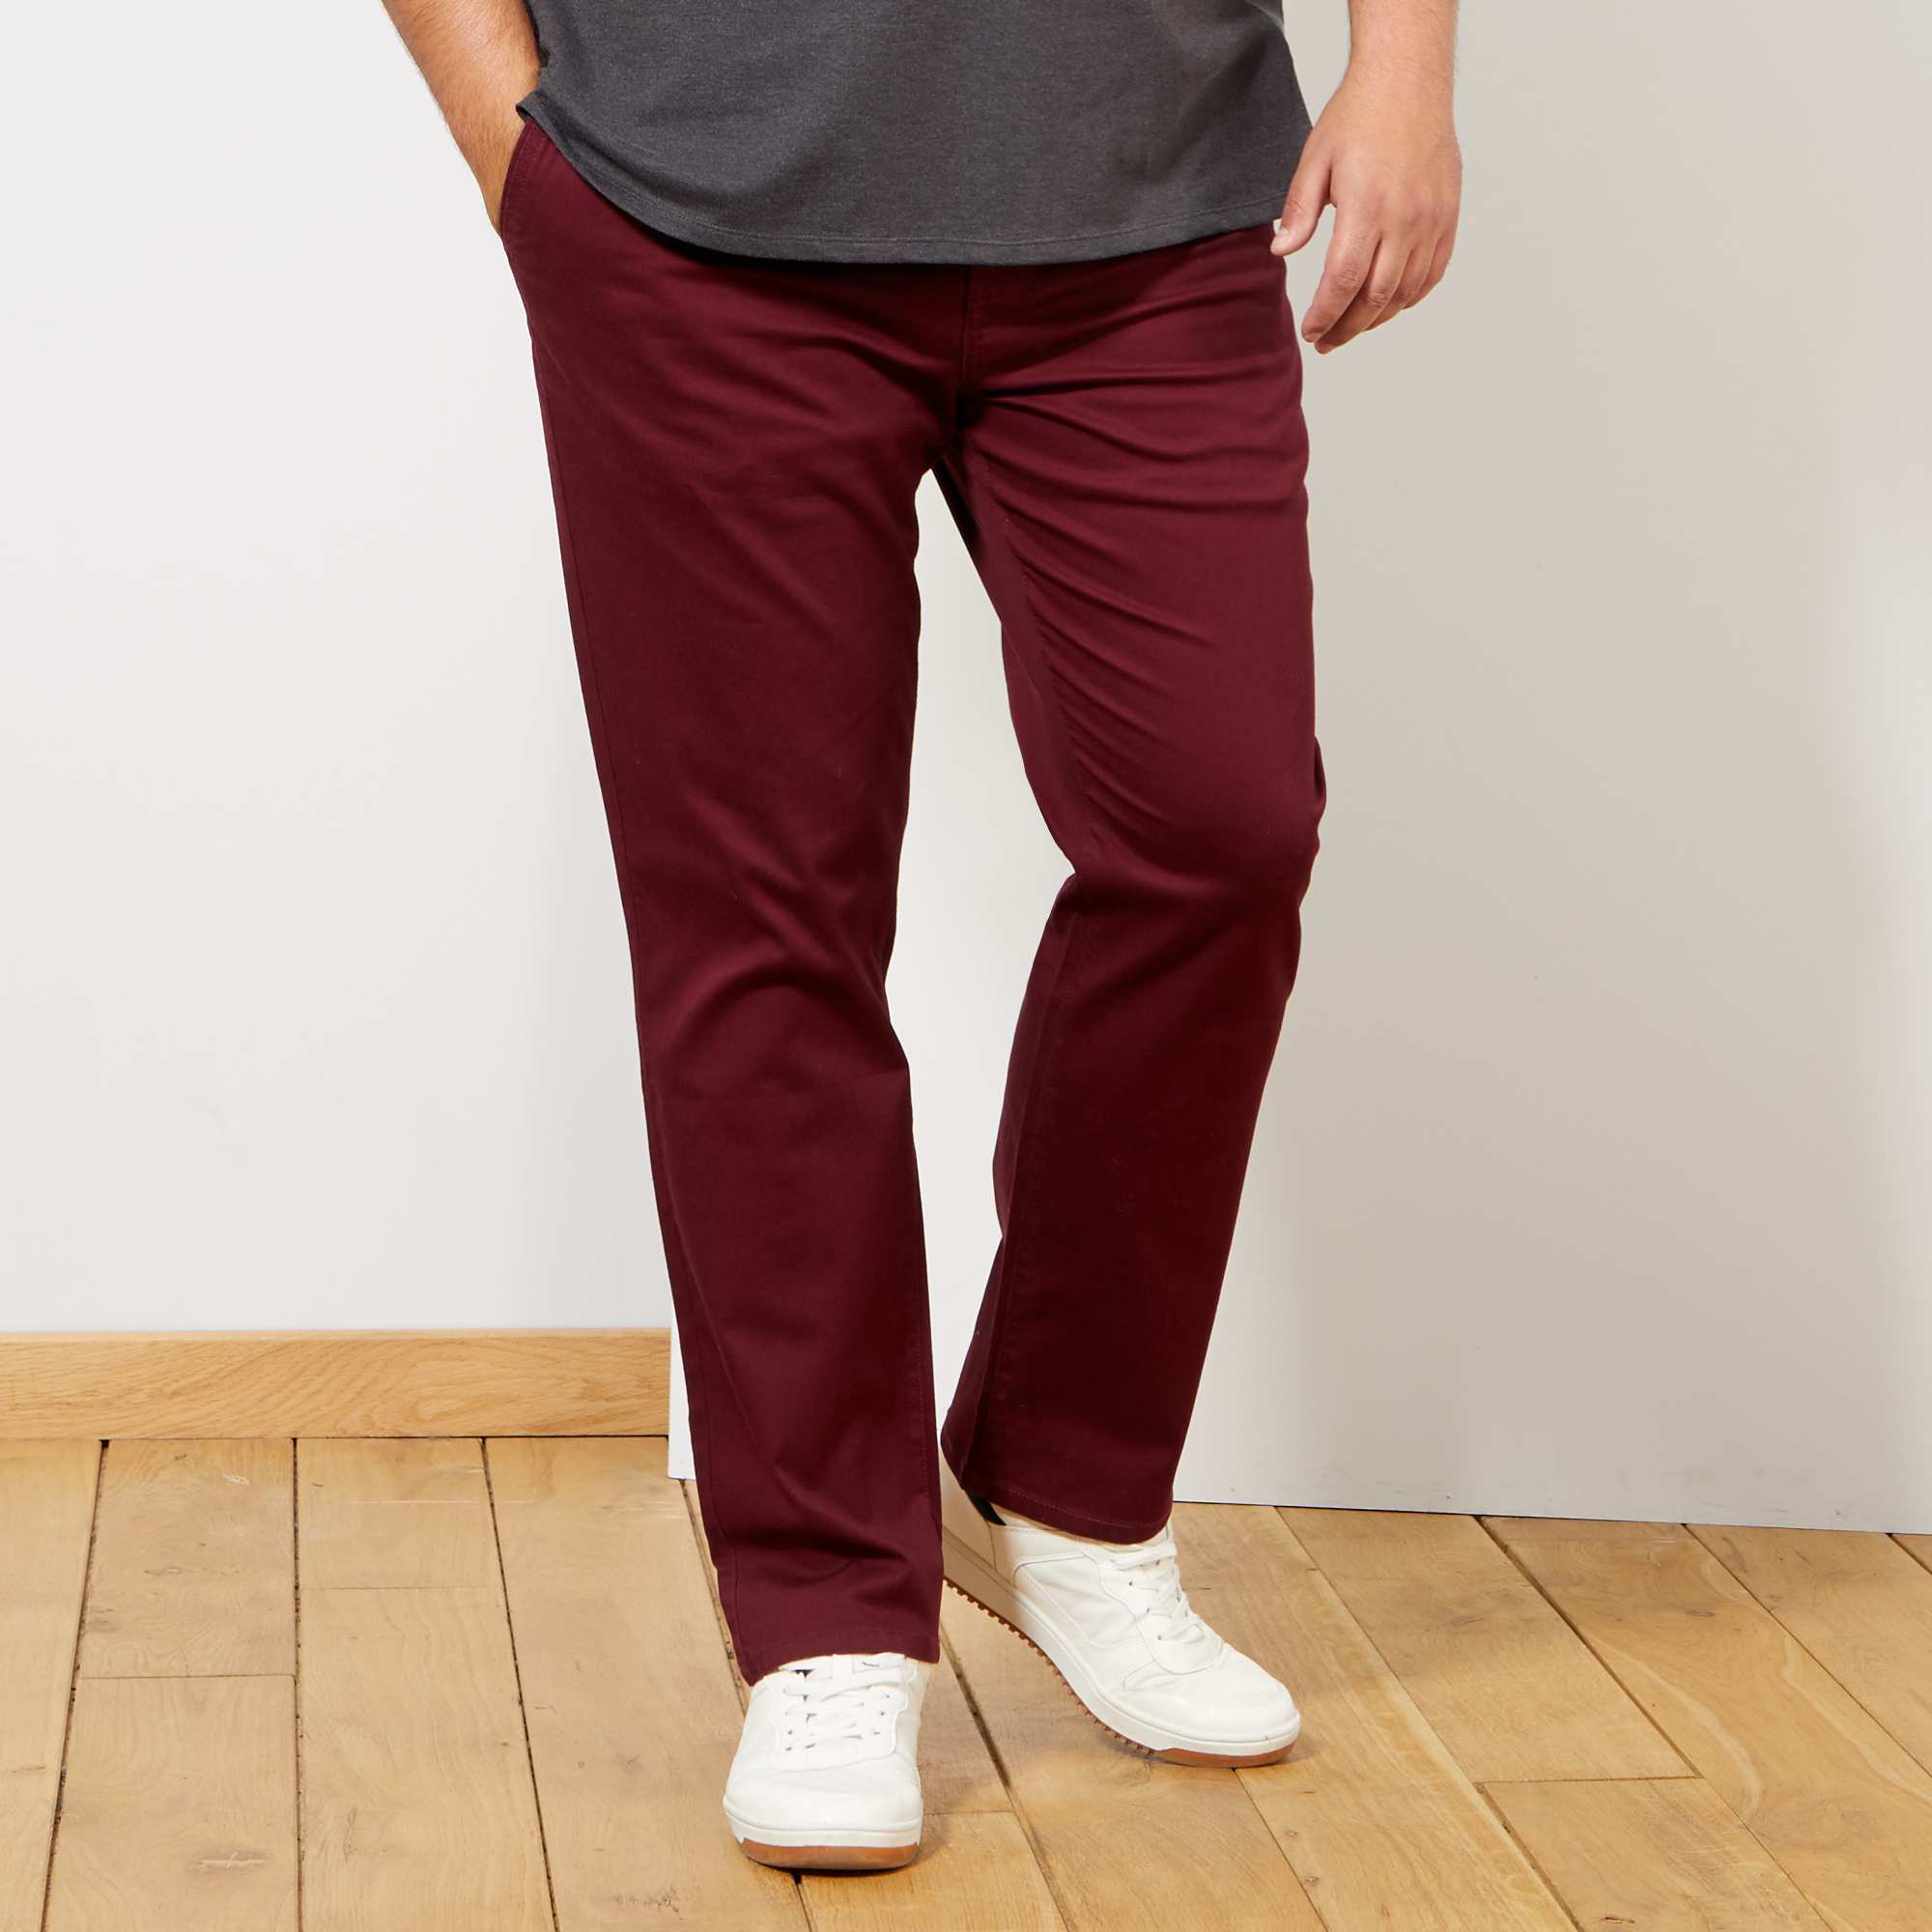 Укороченные мужские брюки: как выбрать и с чем носить?